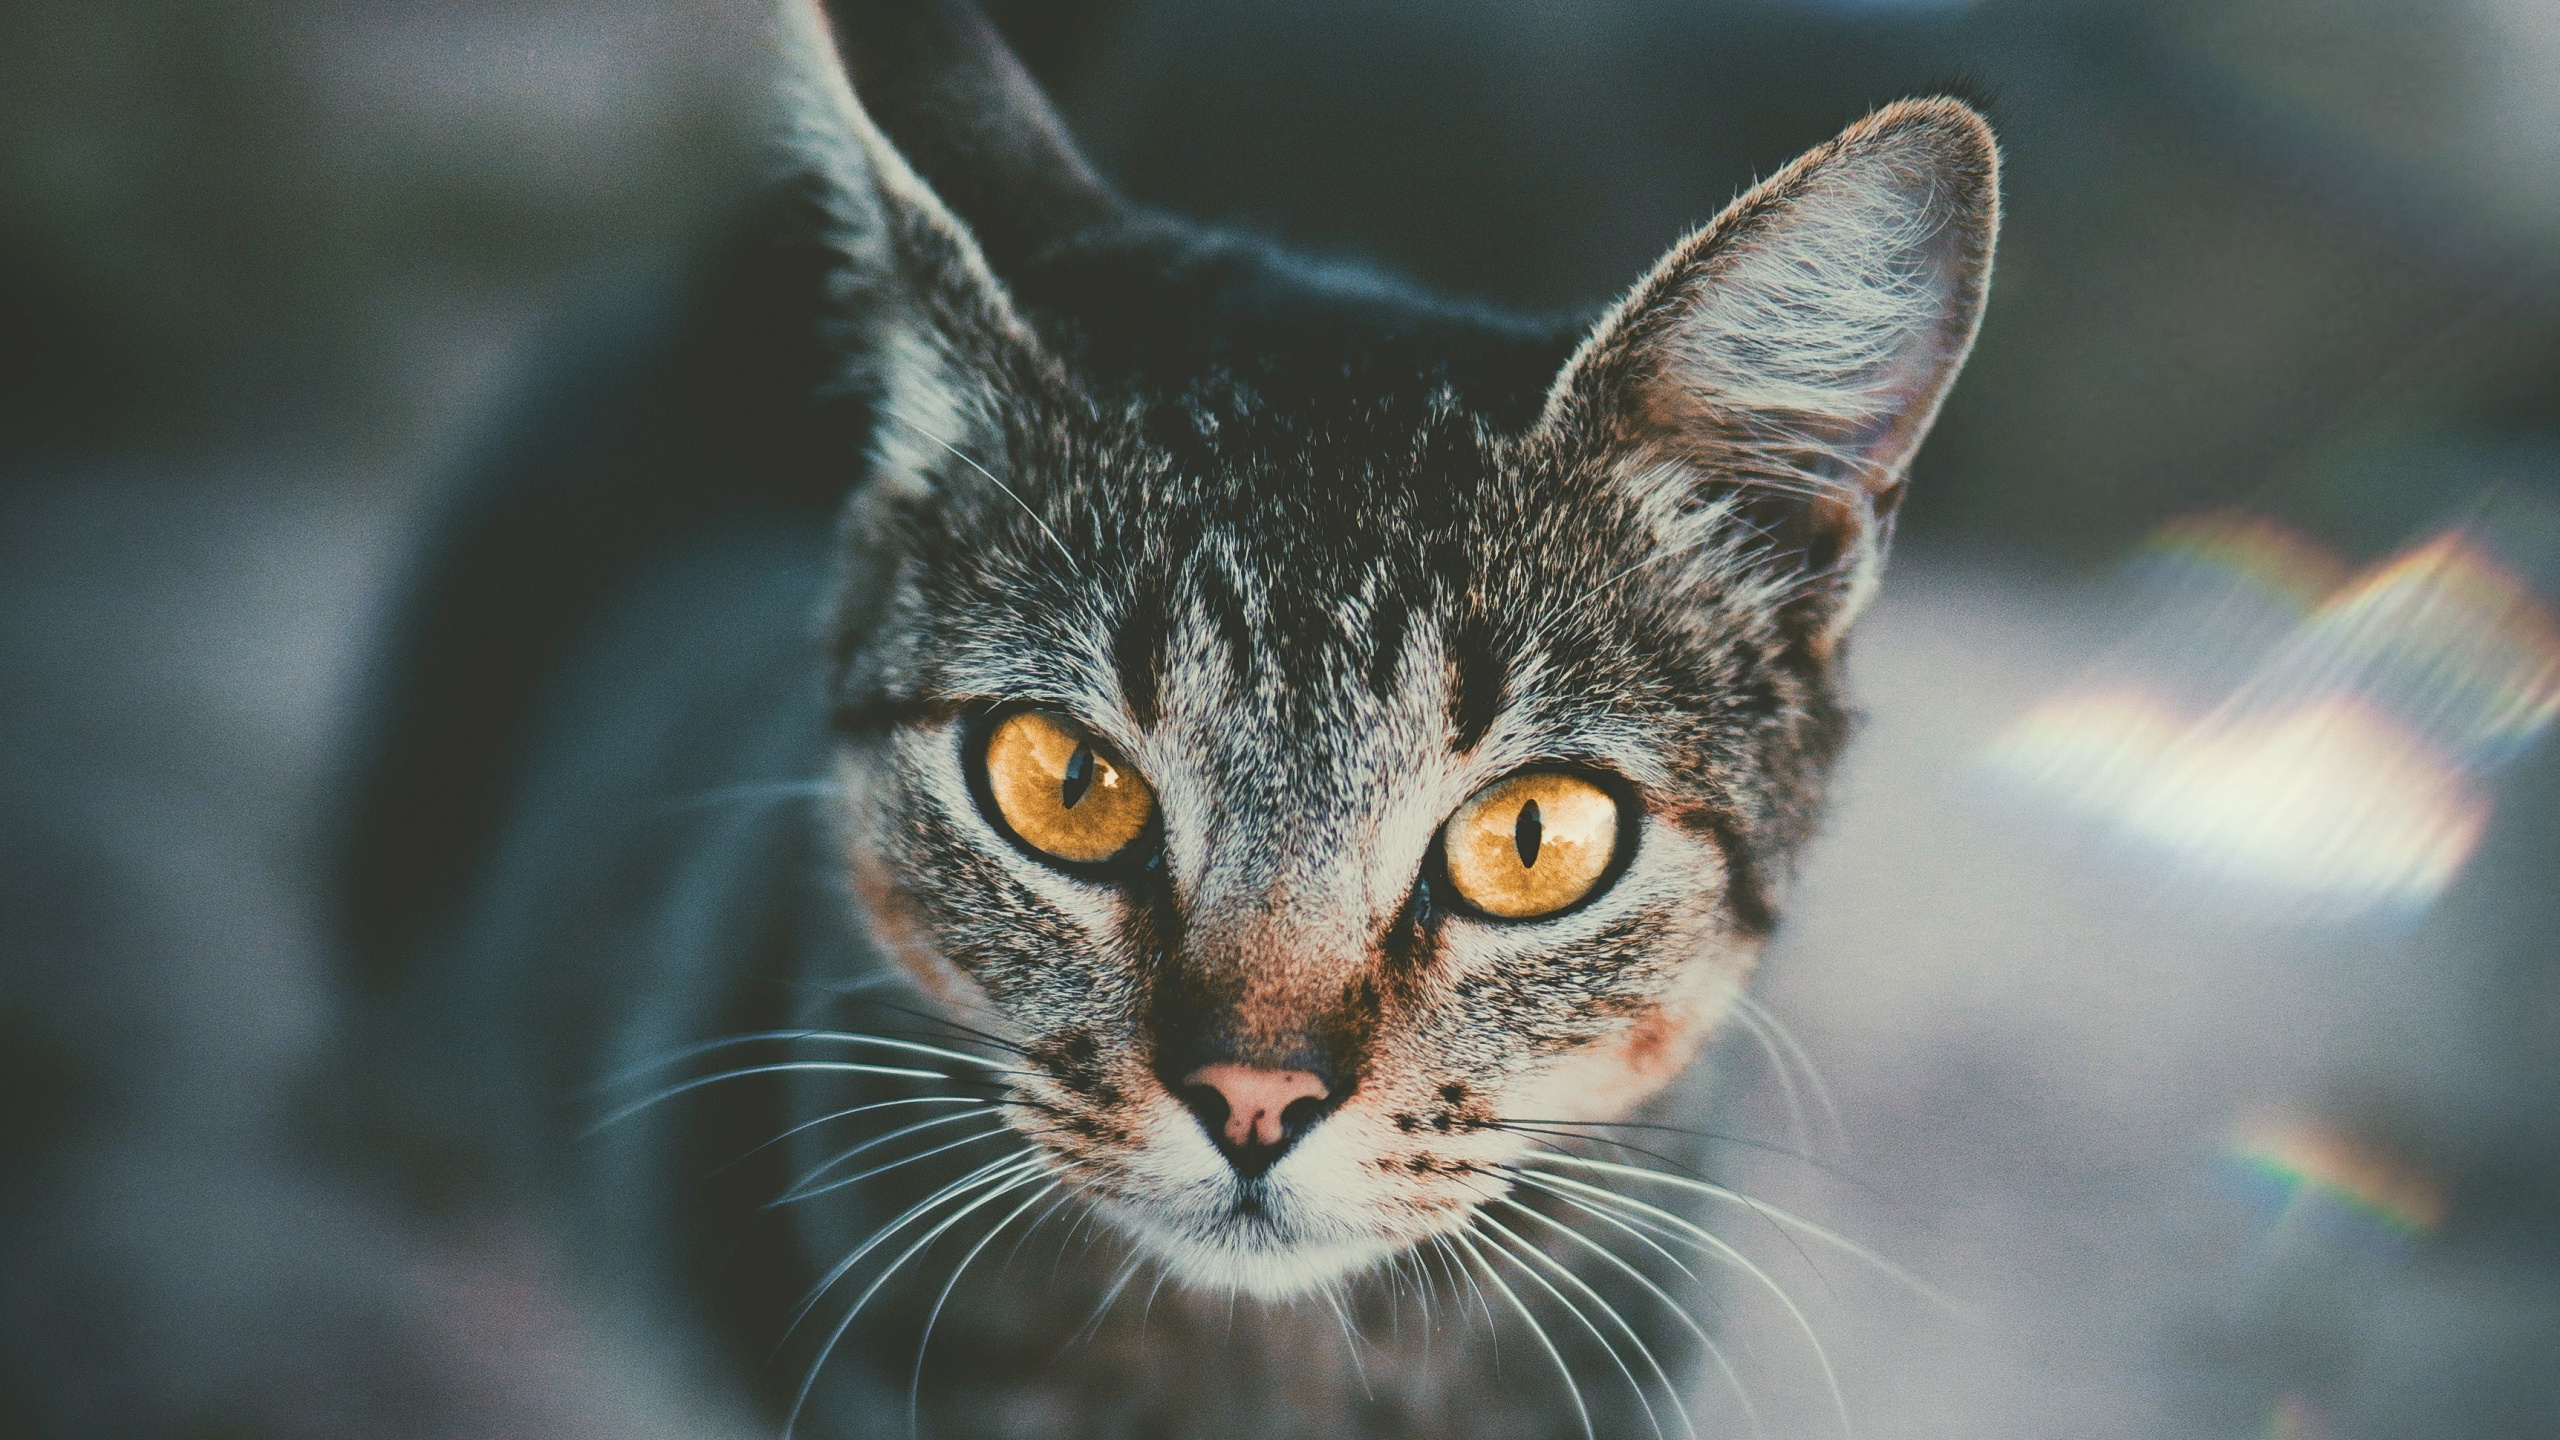 Black and White Cat in Tilt Shift Lens. Wallpaper in 2560x1440 Resolution